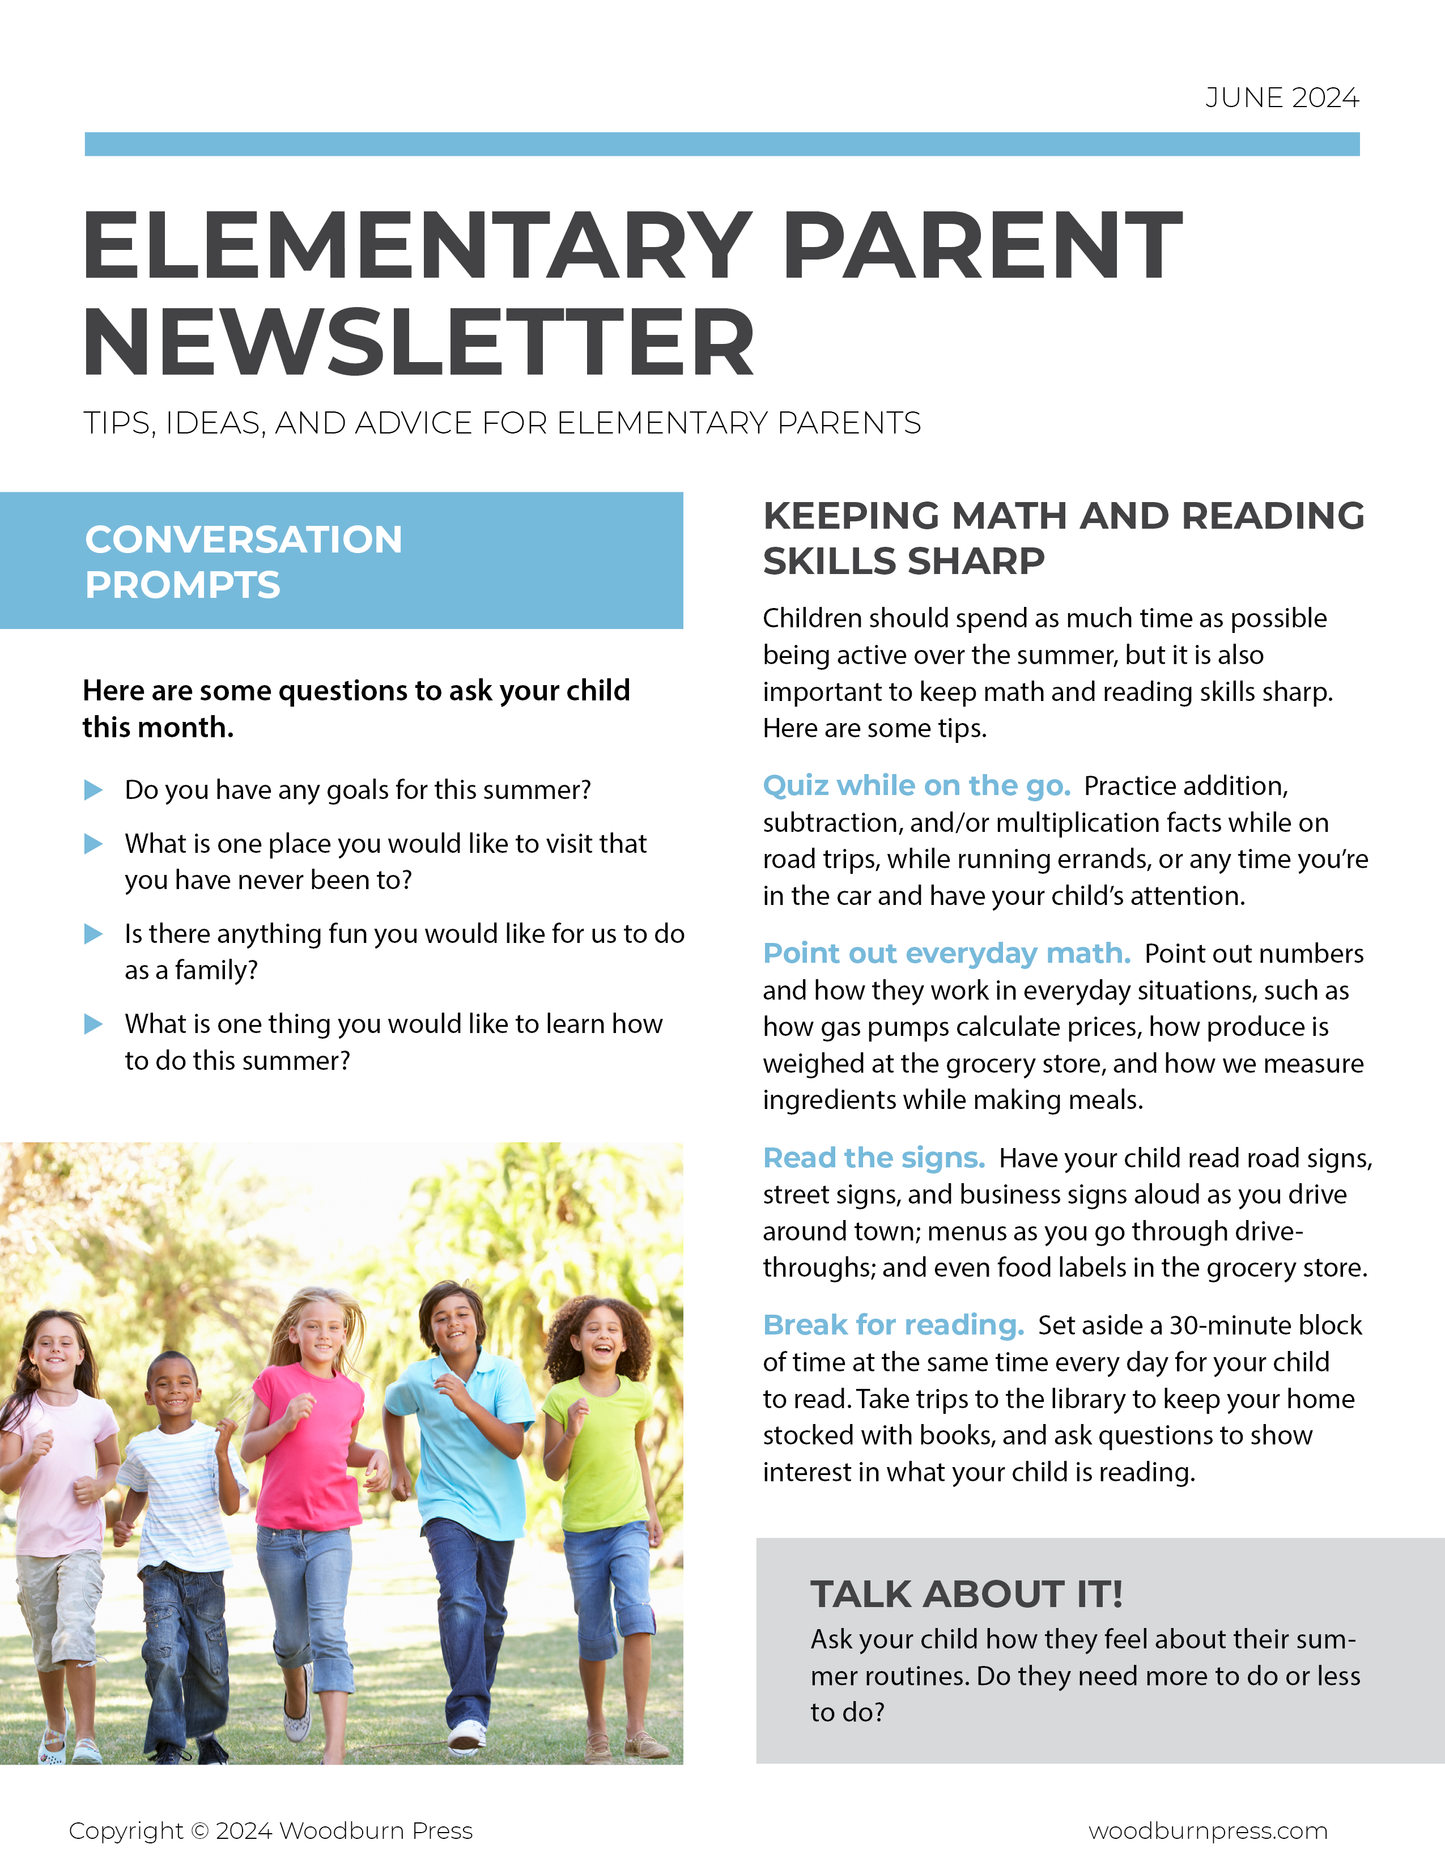 Elementary Parent Newsletter - June 2024